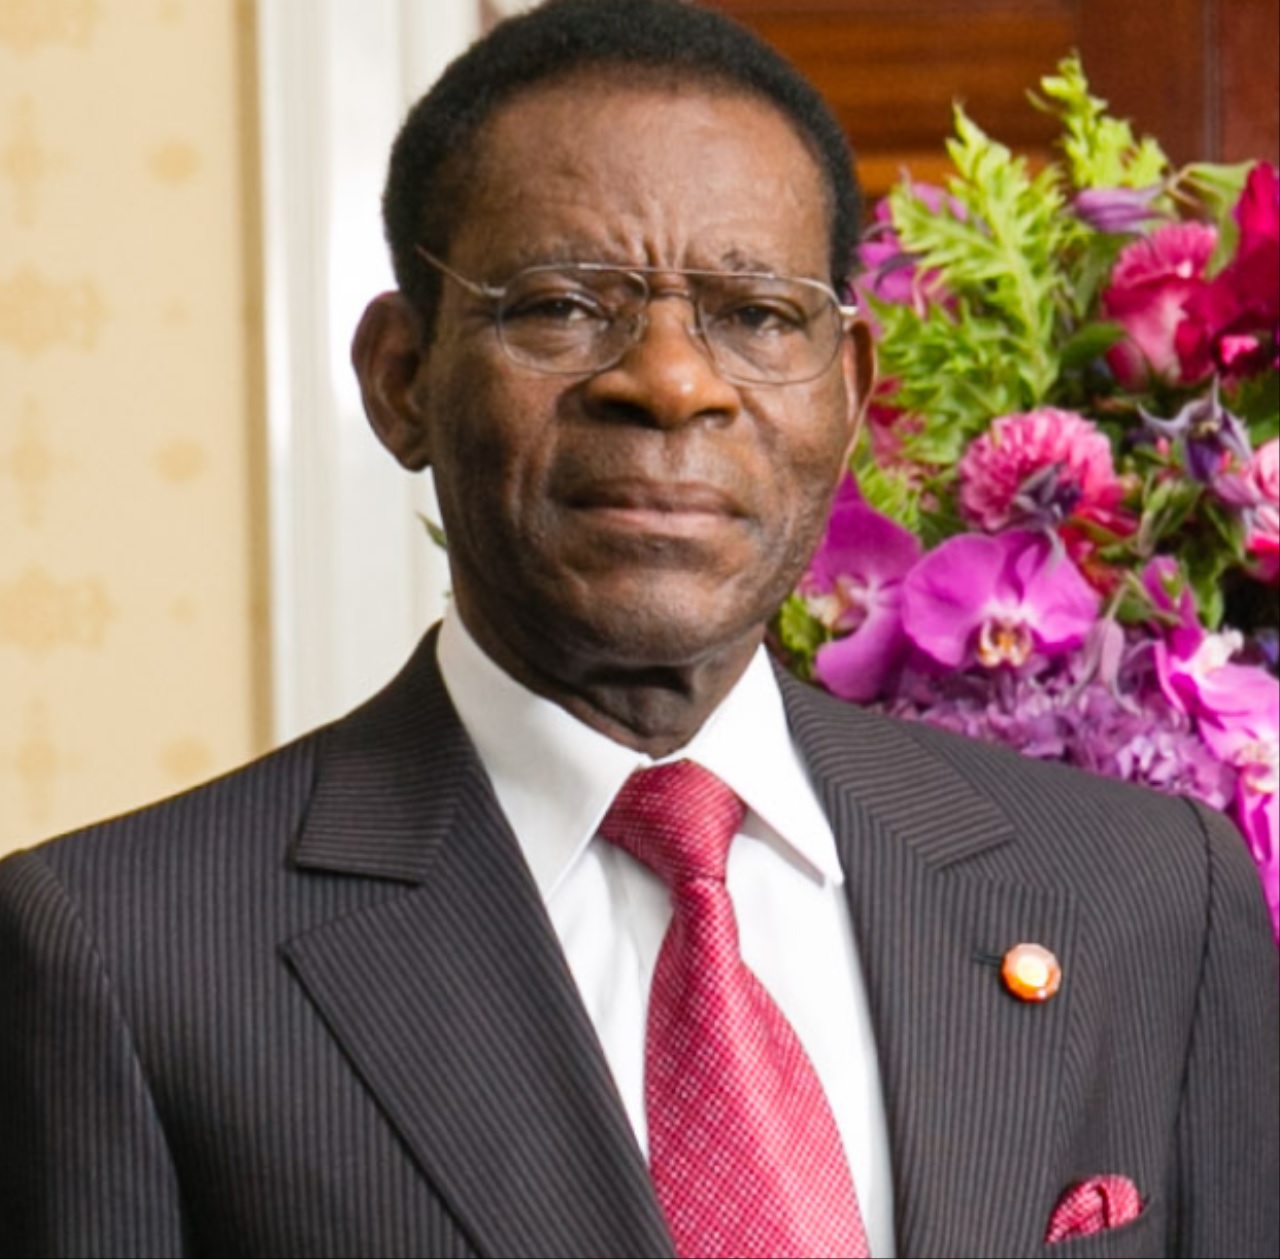 Mark Thatcher cerca di destituire il presidente Obiang